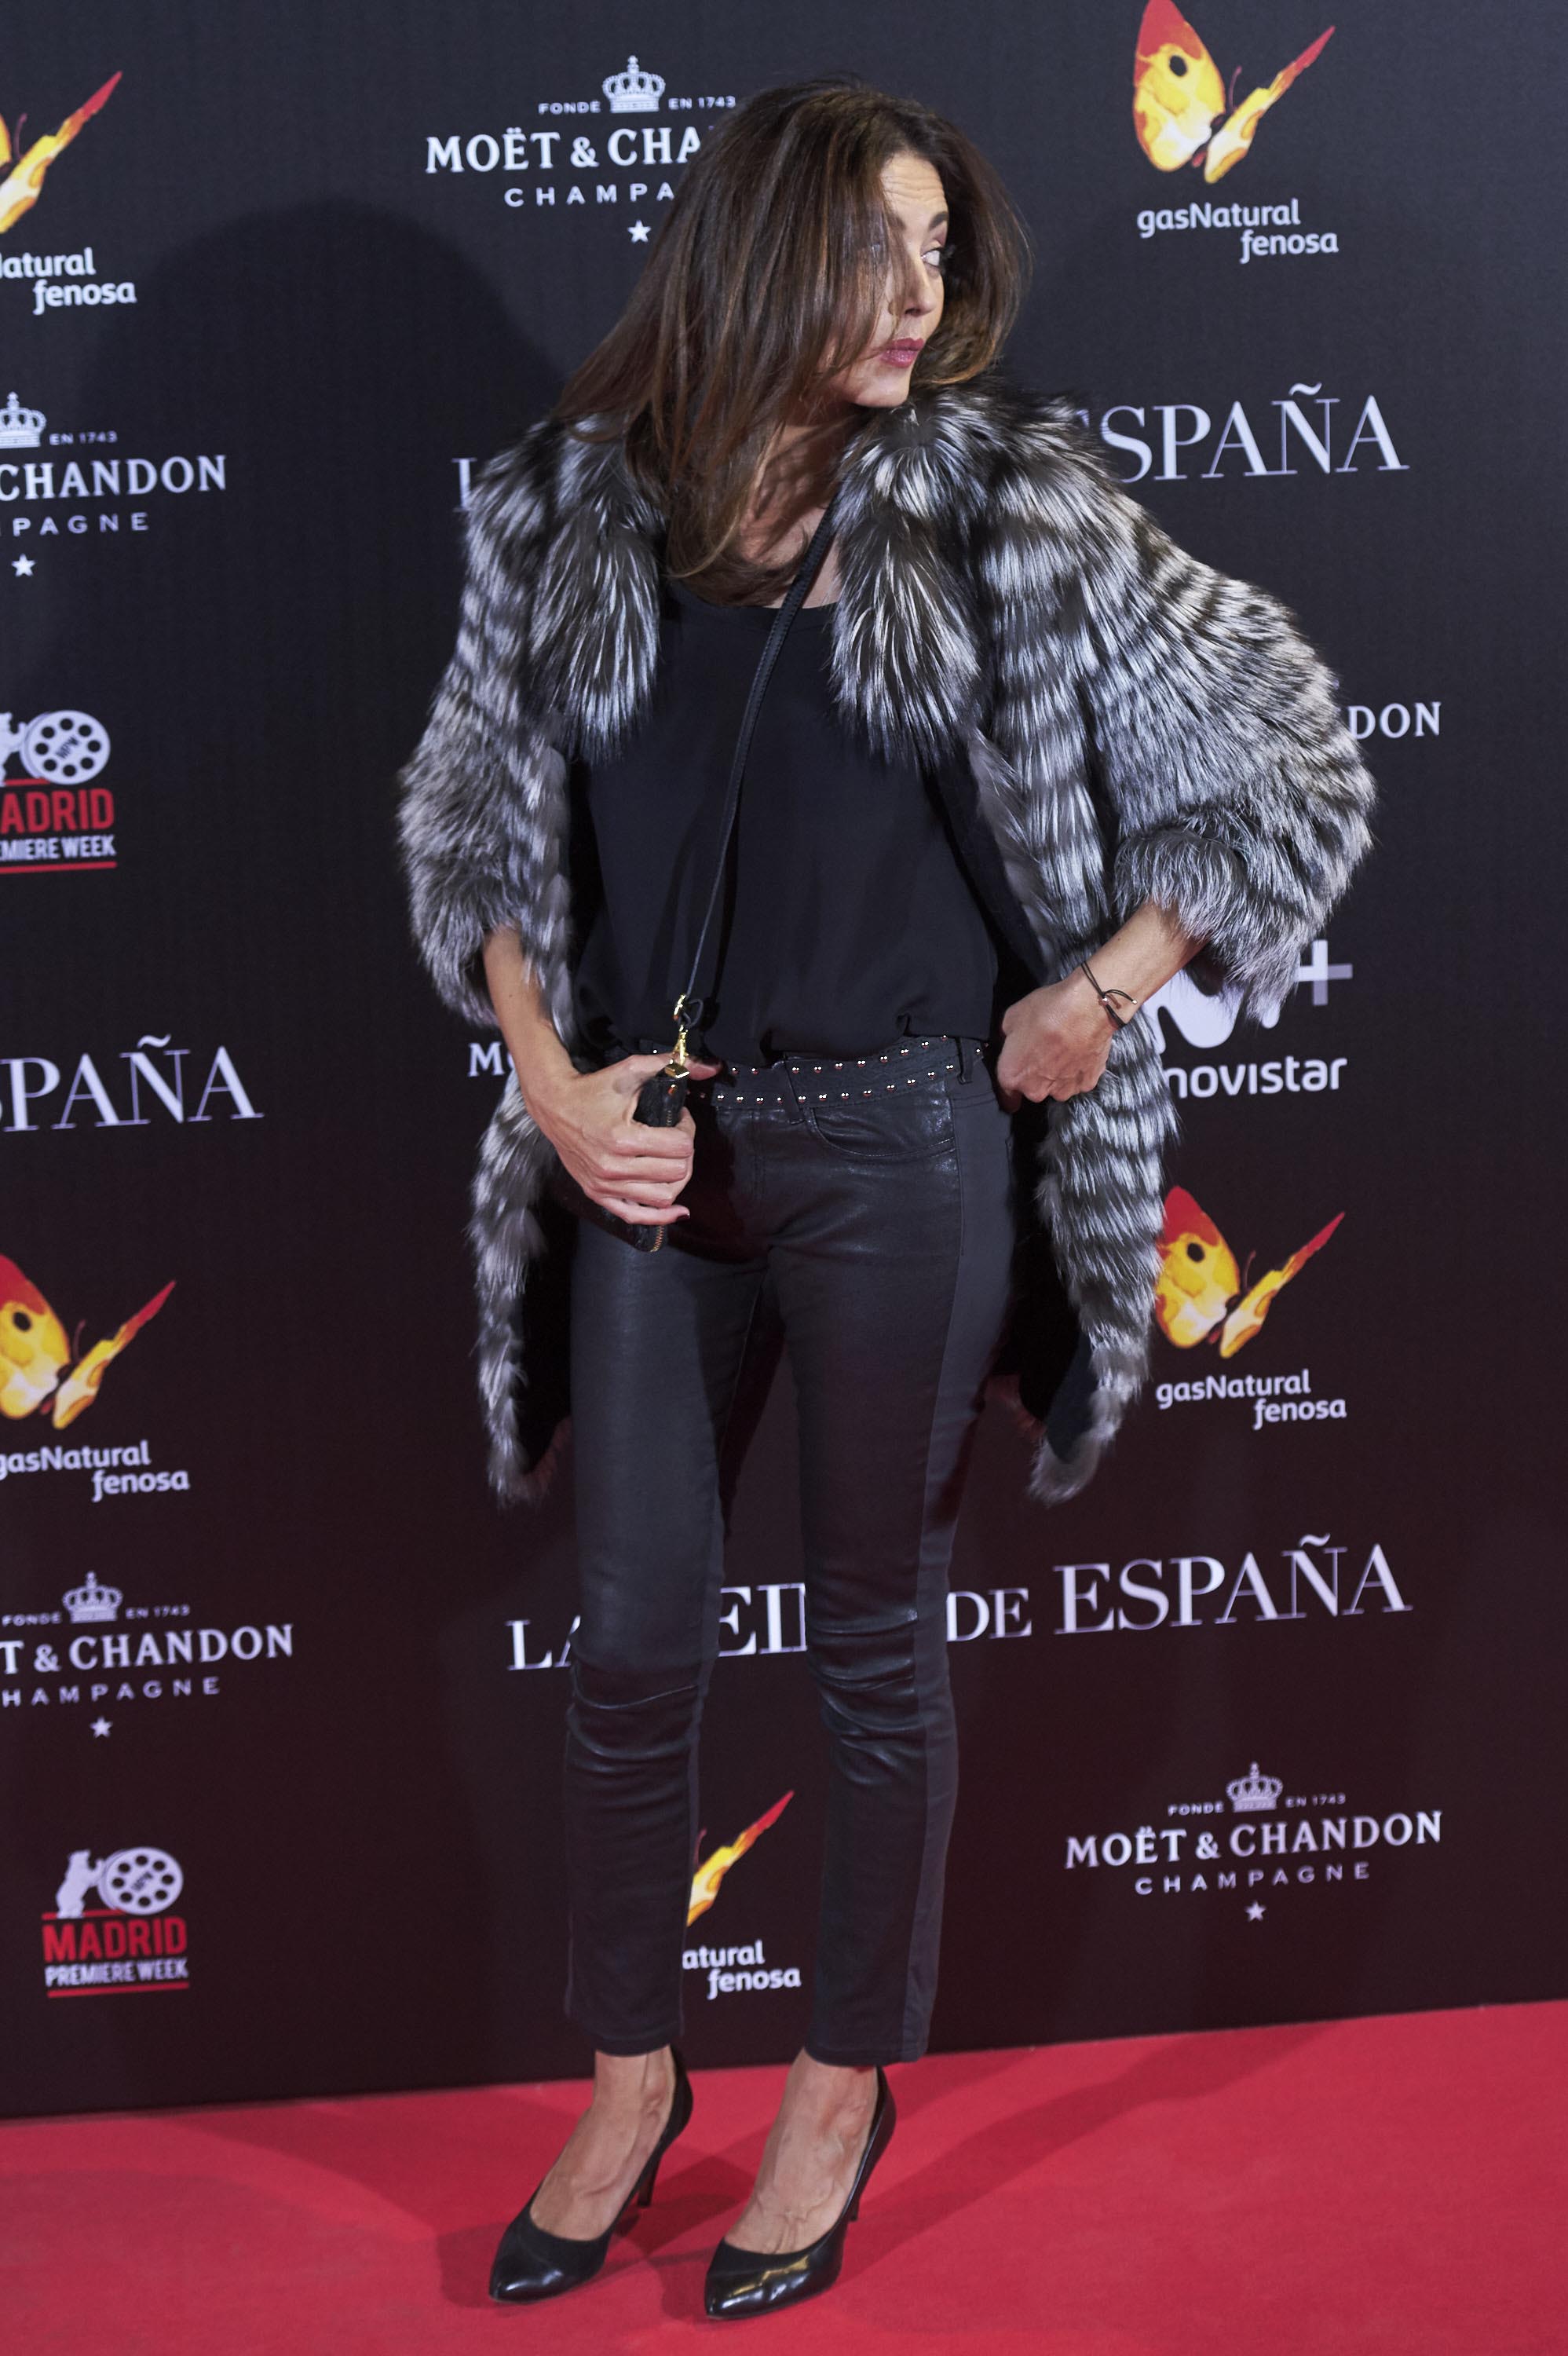 Jose Toledo attends La Reina de Espana premiere